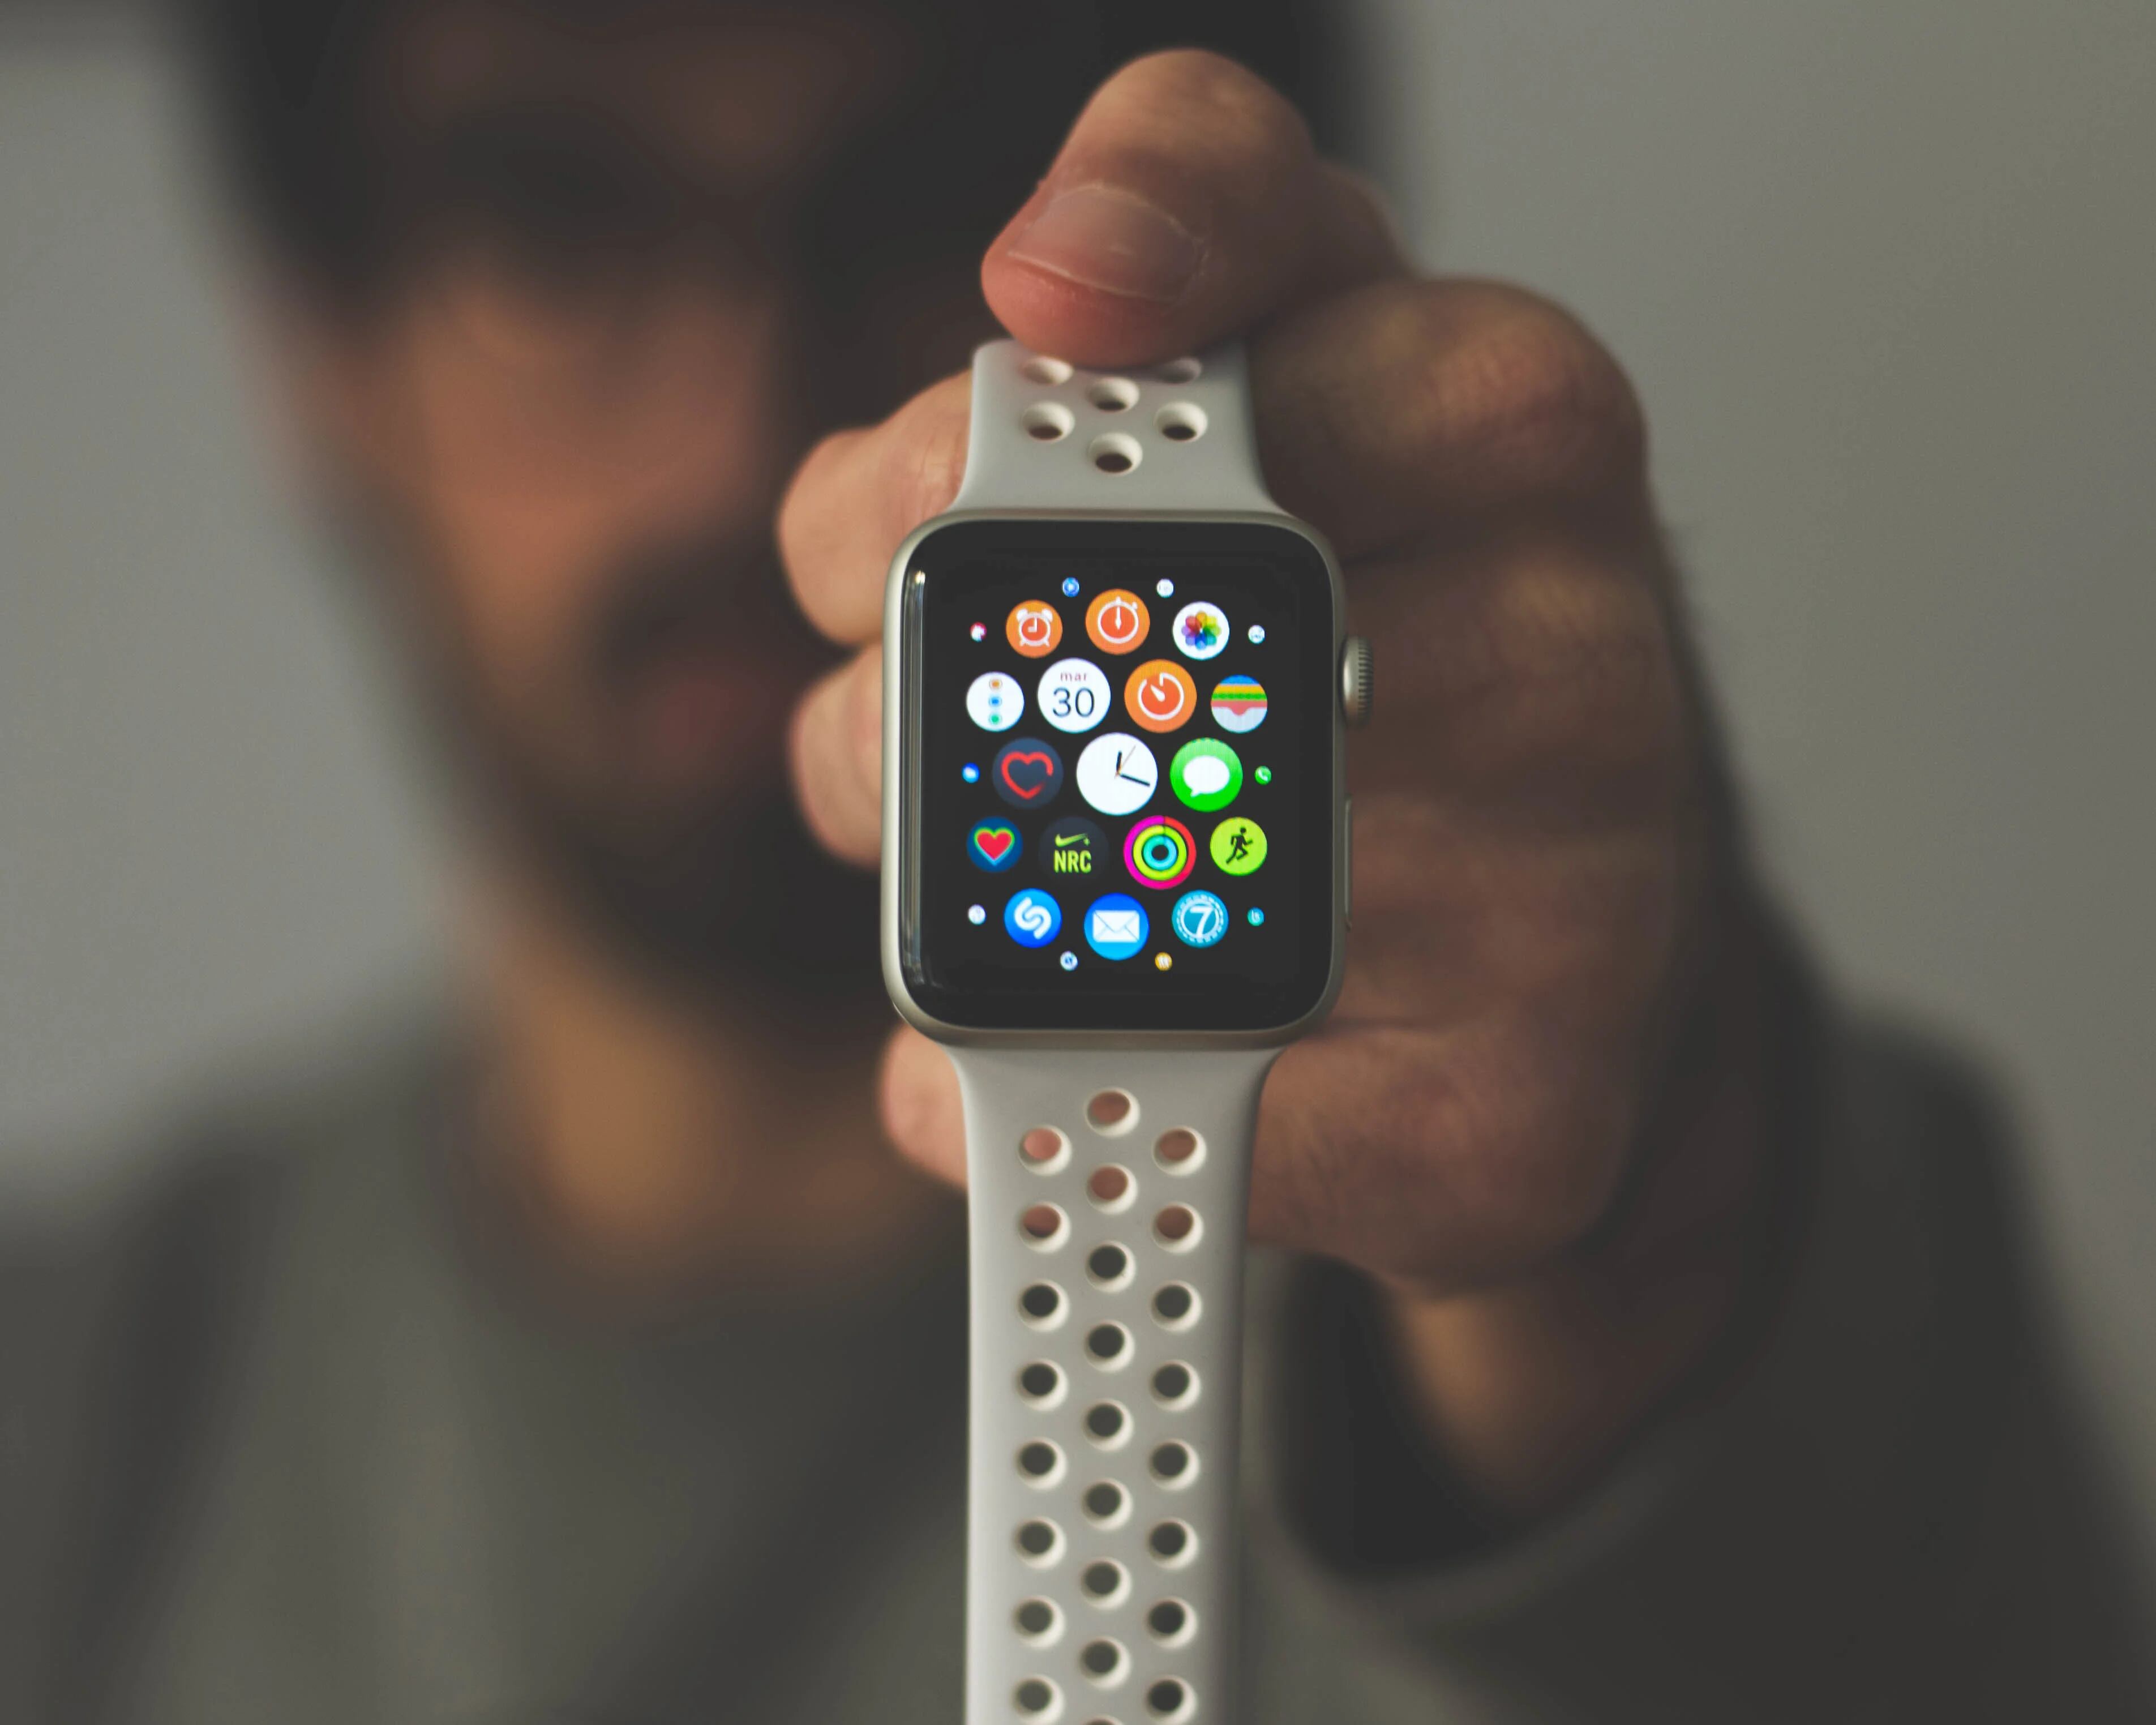 Los relojes inteligentes necesitan emitir una luz para tomar los datos de salud del usuario. (Unsplash)